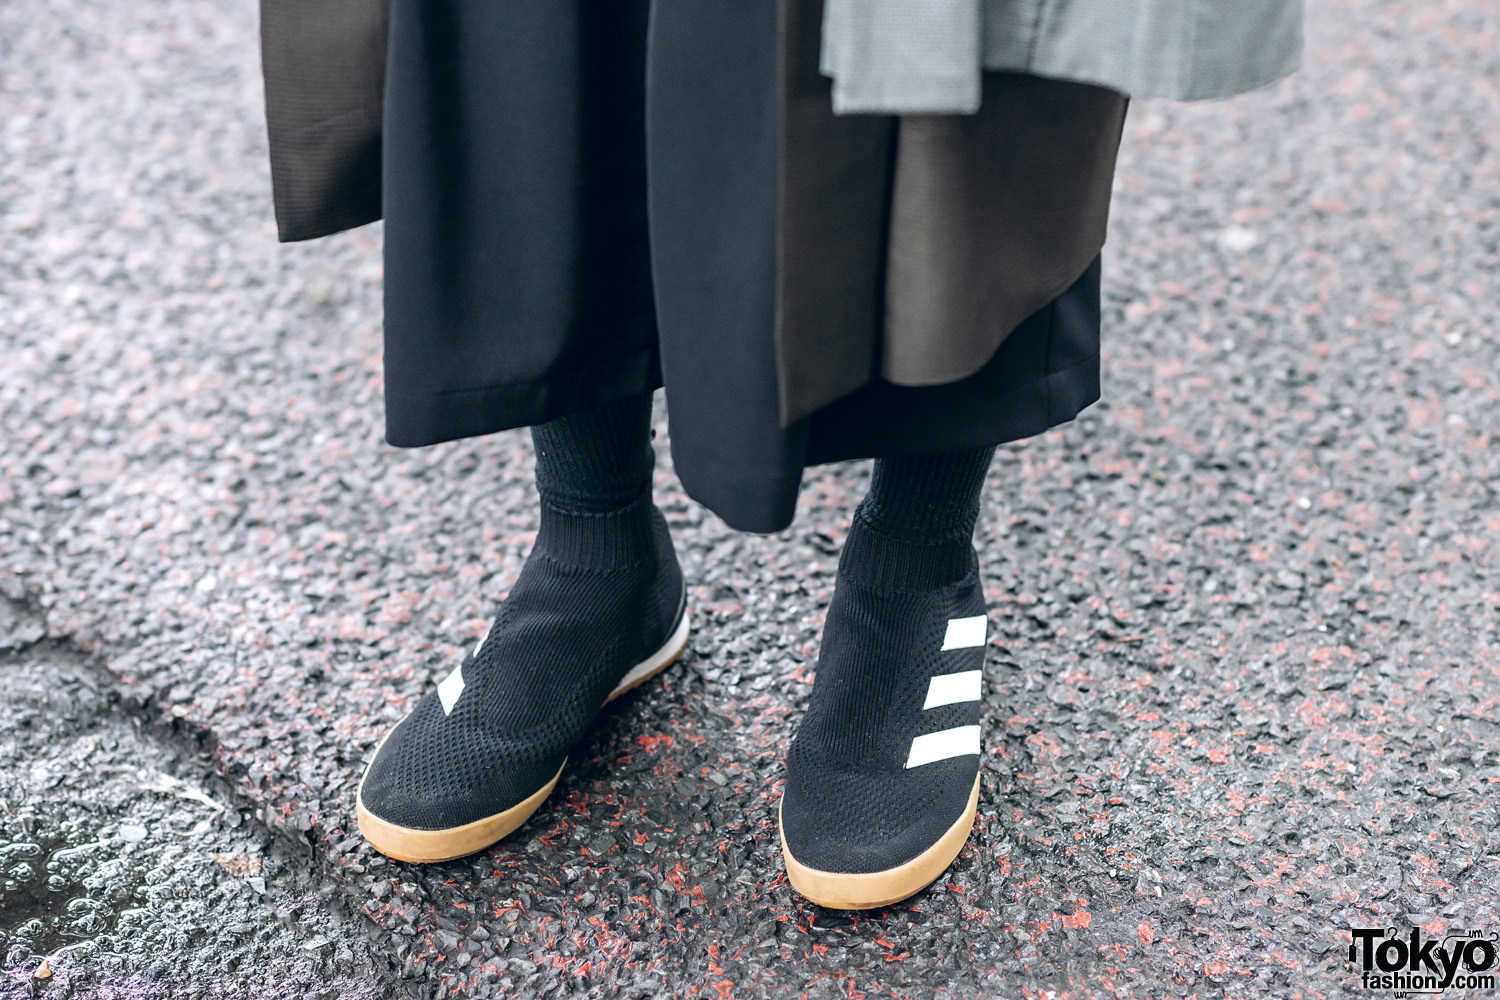 Adidas Sock Shoes & Ribbed Socks in Harajuku – Tokyo Fashion